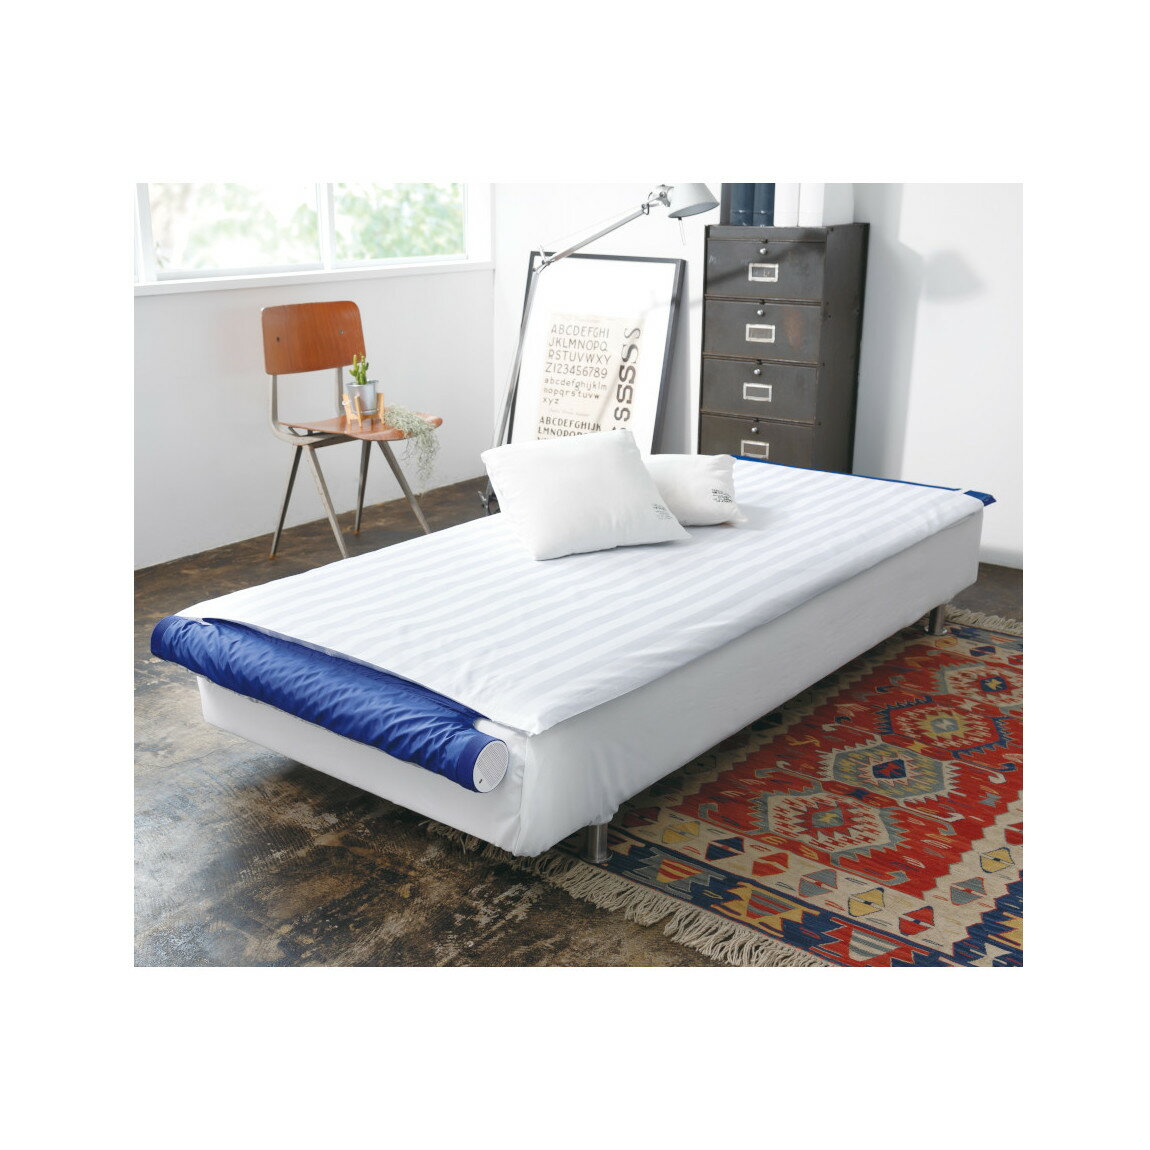 【即納】 空調ベッド風眠3 KBTS03寝具 夏のベッド用品 快適睡眠 体の下に風が吹き抜ける 送料無料